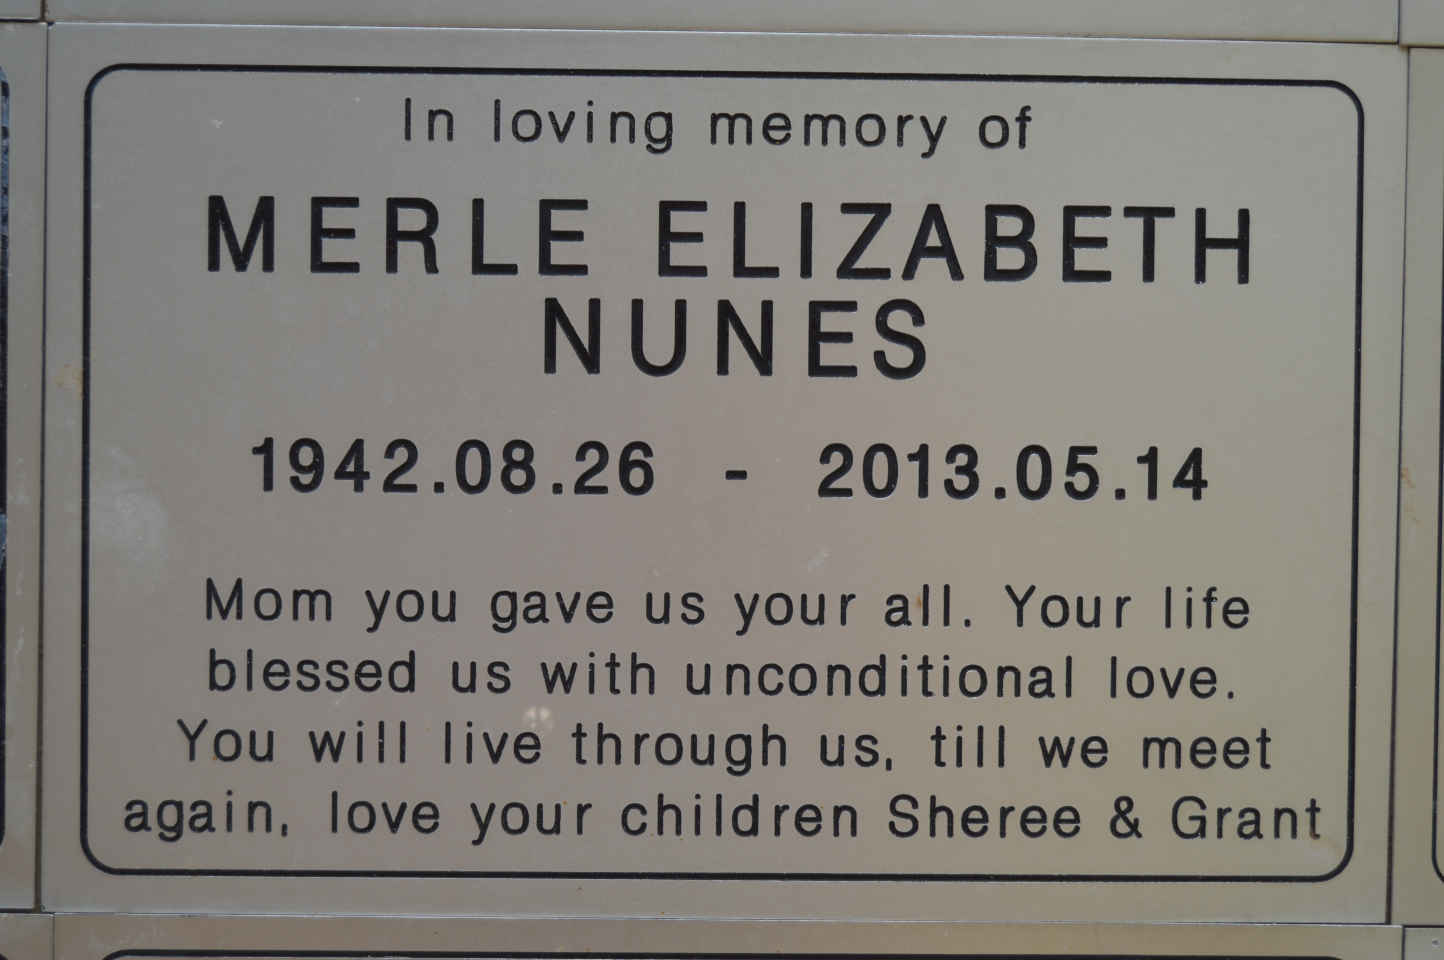 NUNES Merle Elizabeth 1942-2013